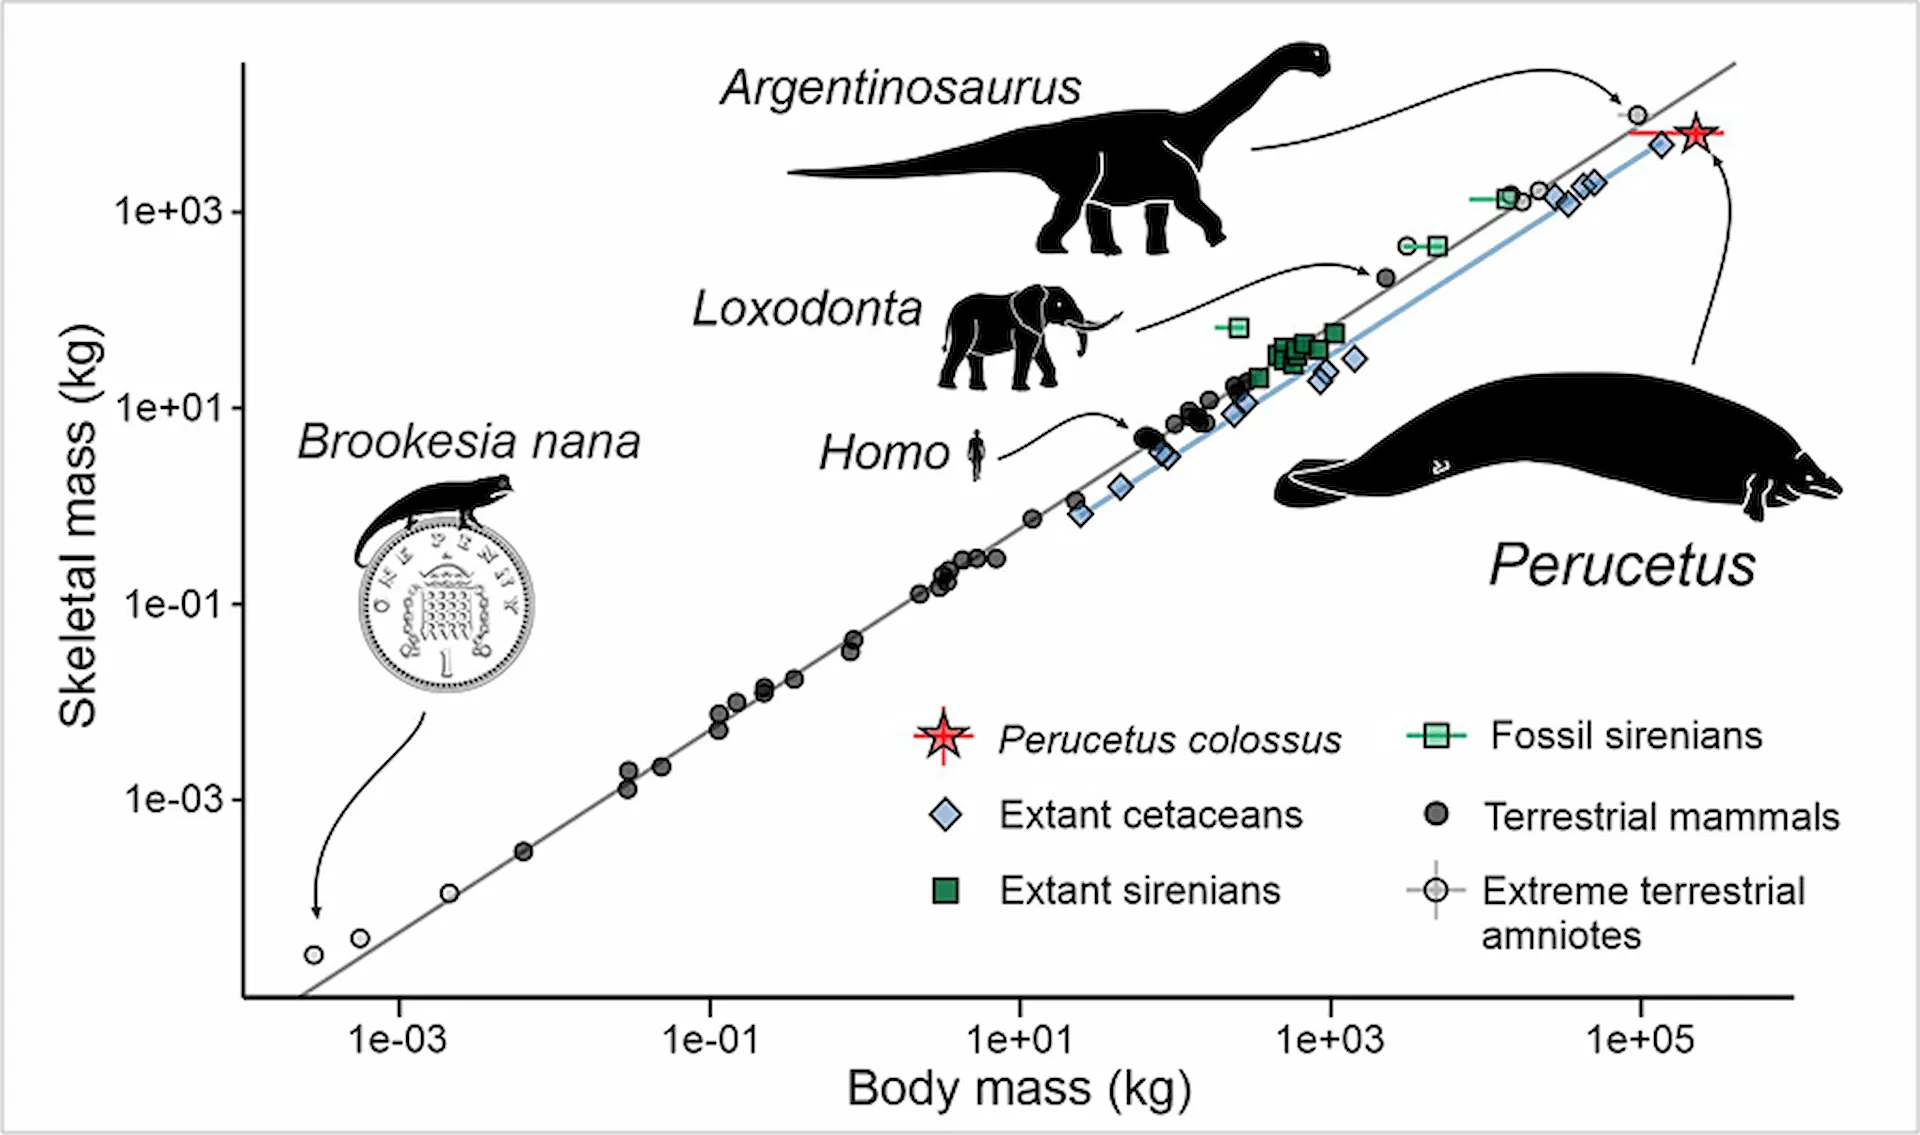 Masa esquelética frente a masa corporal en amniotas (mamíferos y reptiles, incluidas las aves) / Imagen: Alberto Gennari